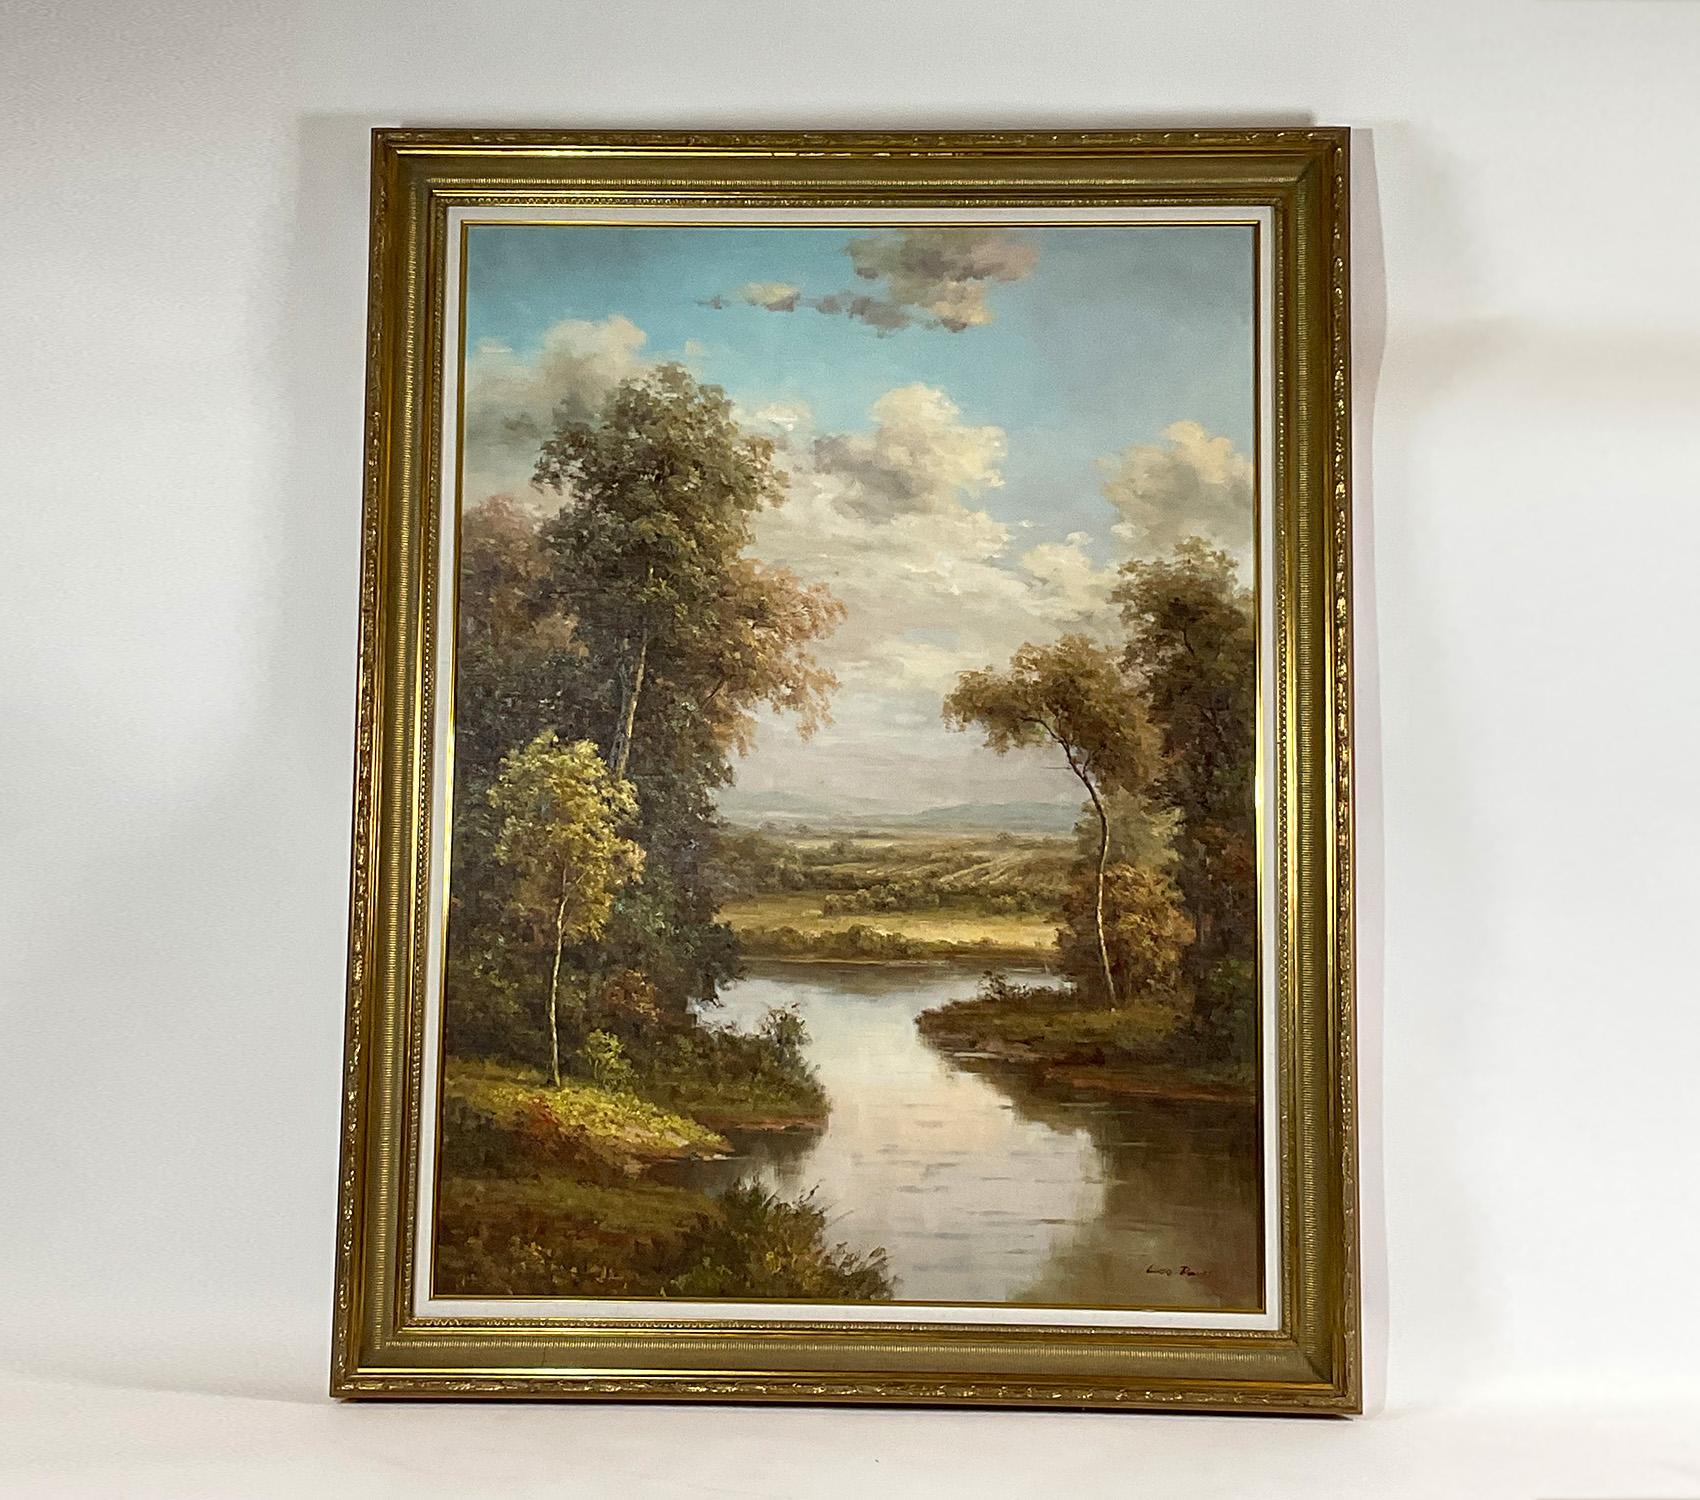 Außergewöhnlich großes Landschaftsgemälde in Öl auf Leinwand, das einen Bach oder Fluss zeigt. Zwanzigstes Jahrhundert. Nicht selten, nur dekorativ. Unterzeichnet von Leo Davis.